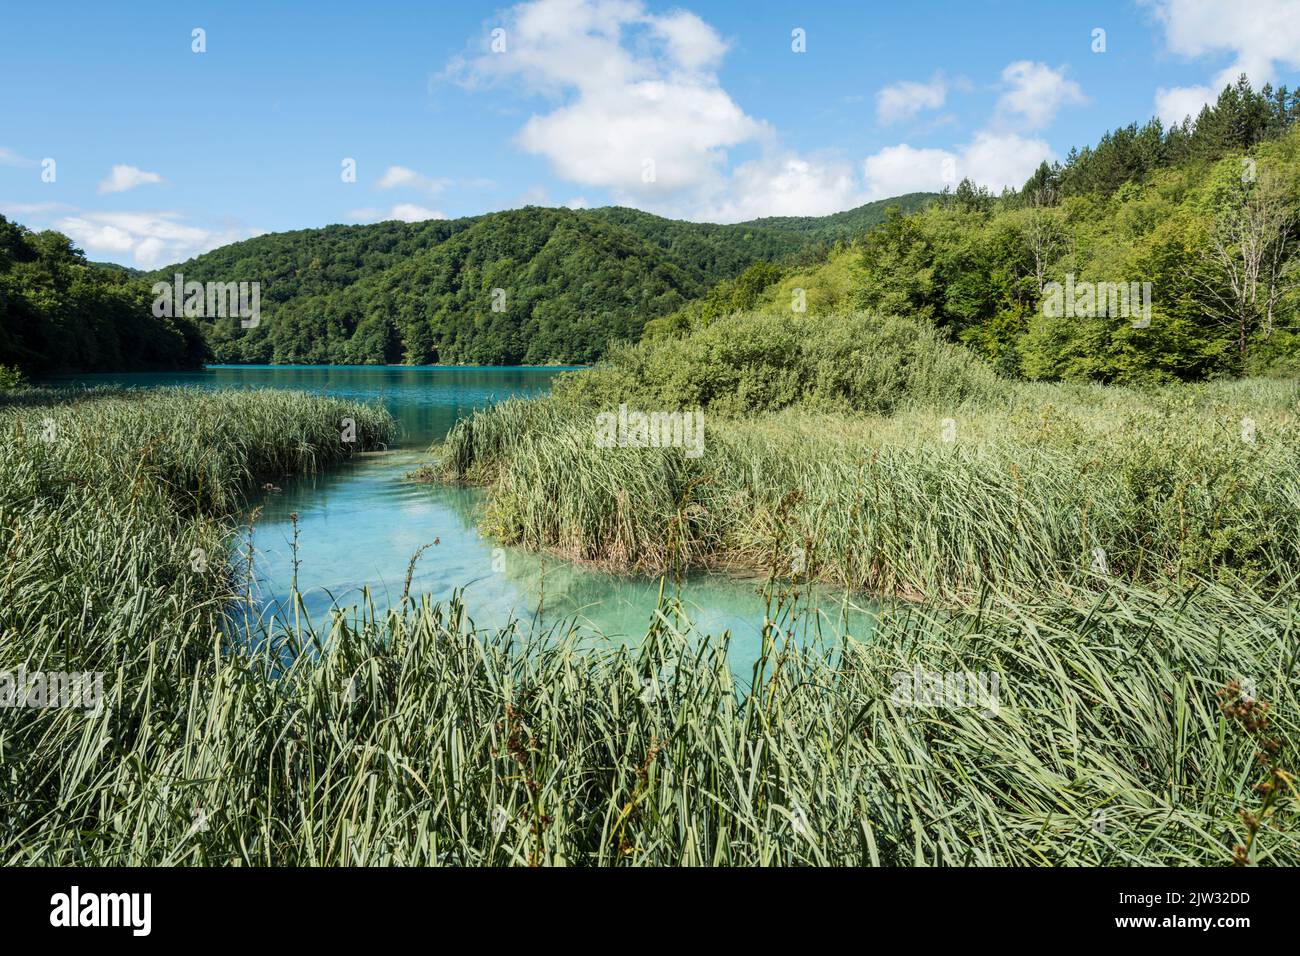 Junco cubrió la costa de un lago en el Parque Nacional de los Lagos de Plitvice, Croacia, Europa. Foto de stock